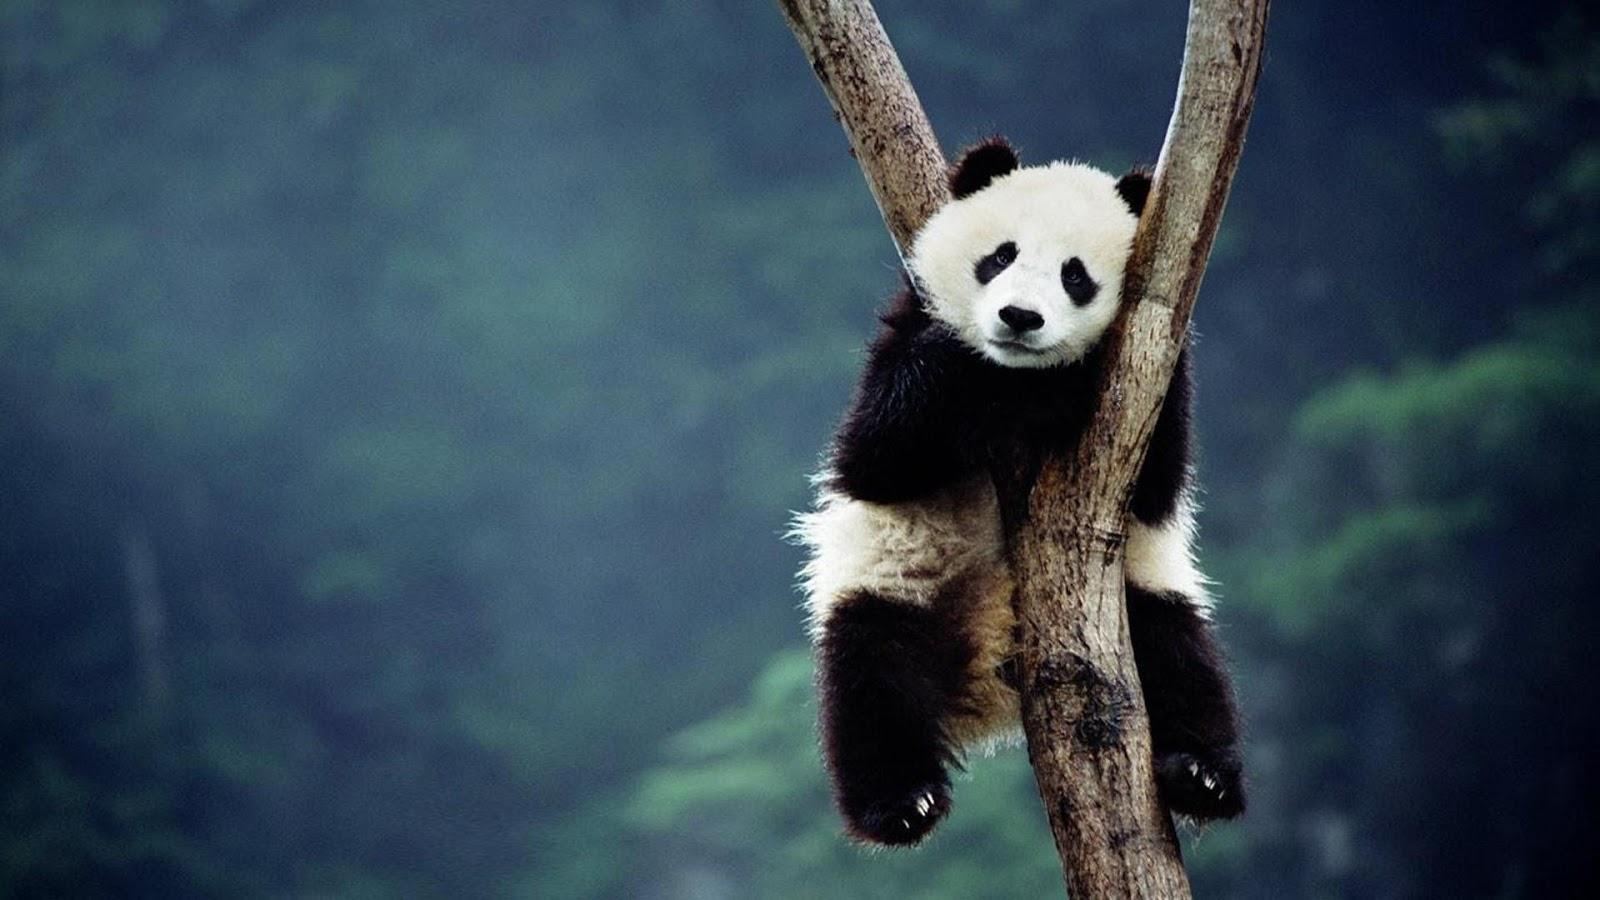 Wallpaper Panda Bears